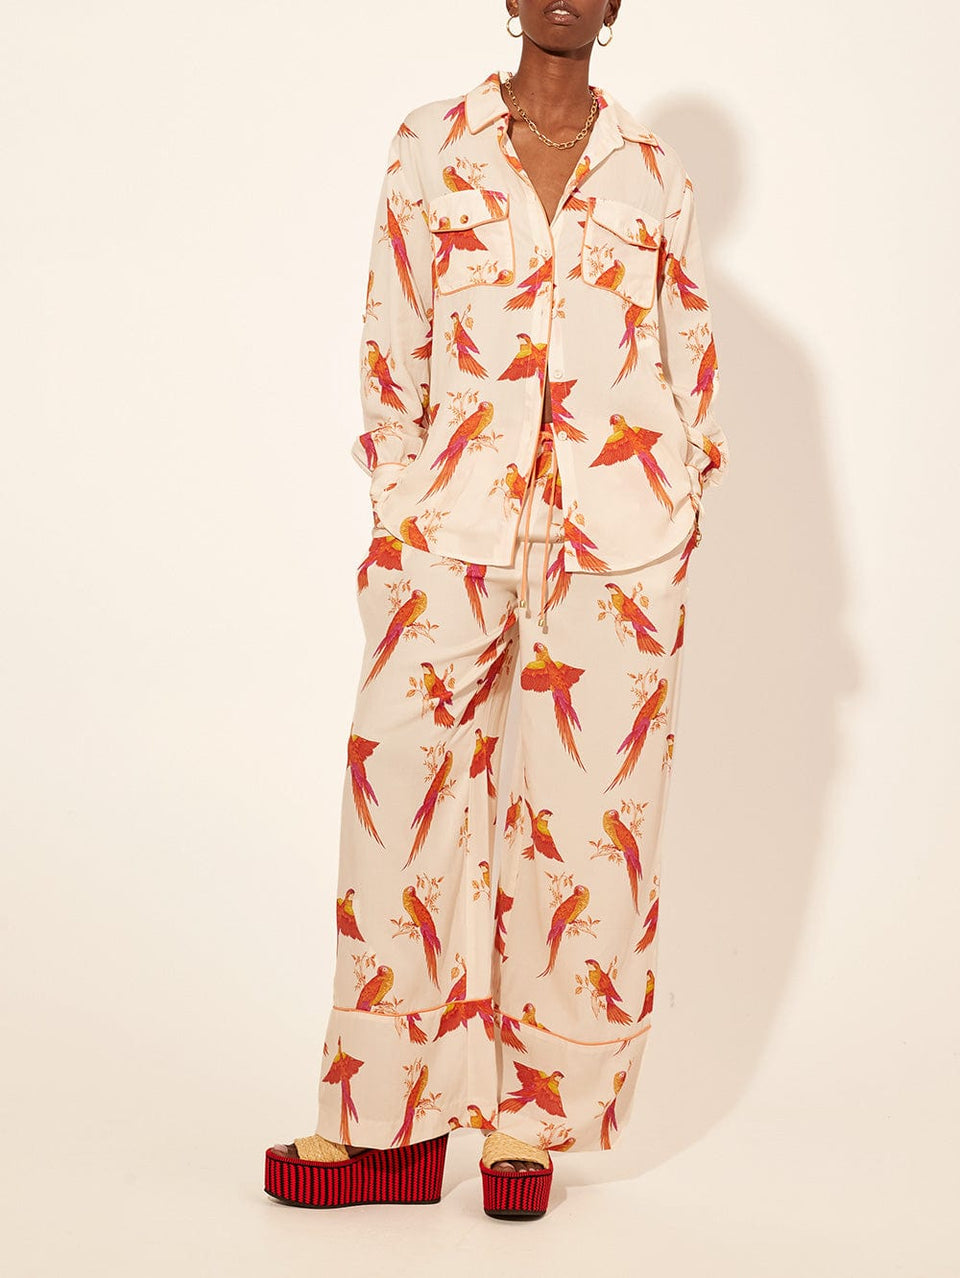 Kaylee Shirt KIVARI | Model wears pink and orange bird printed shirt